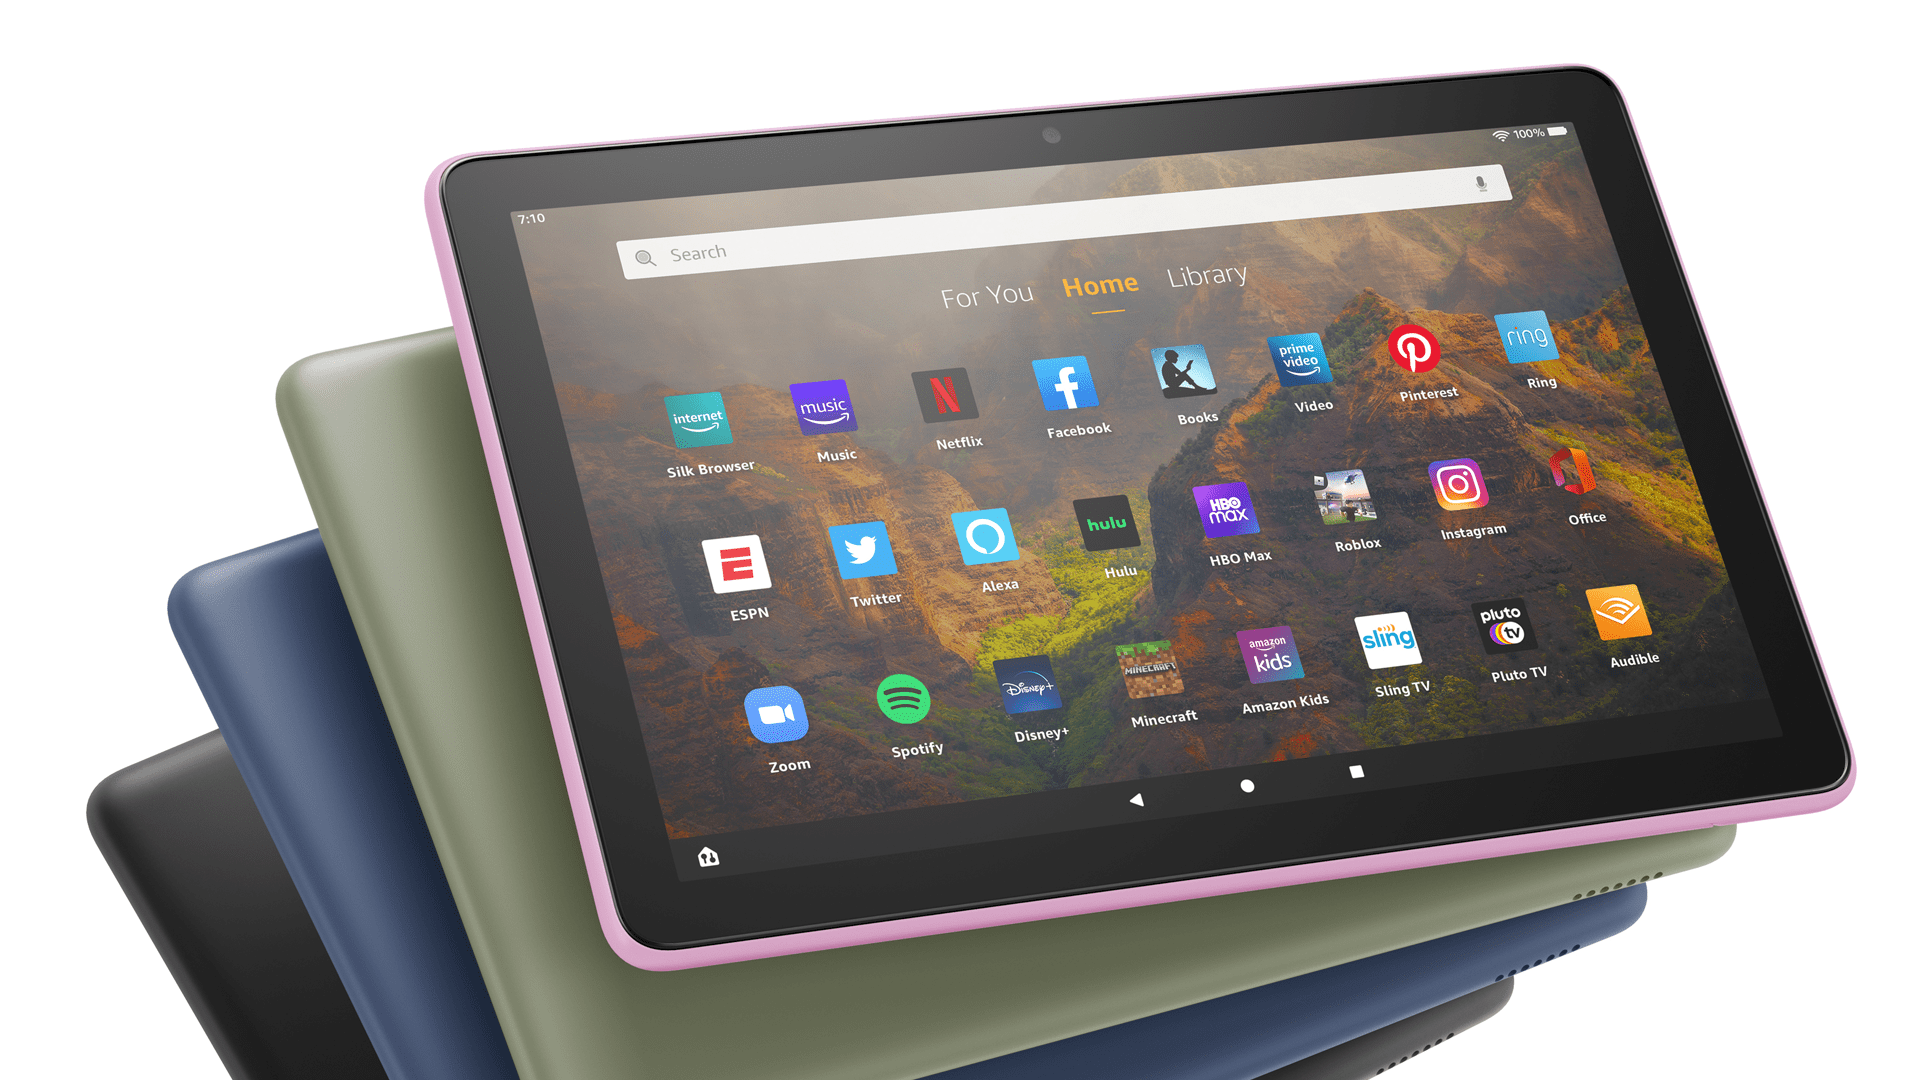 Nhận một cái mới Amazon Fire Tablet với giá 35 đô la trong đợt giảm giá hôm nay